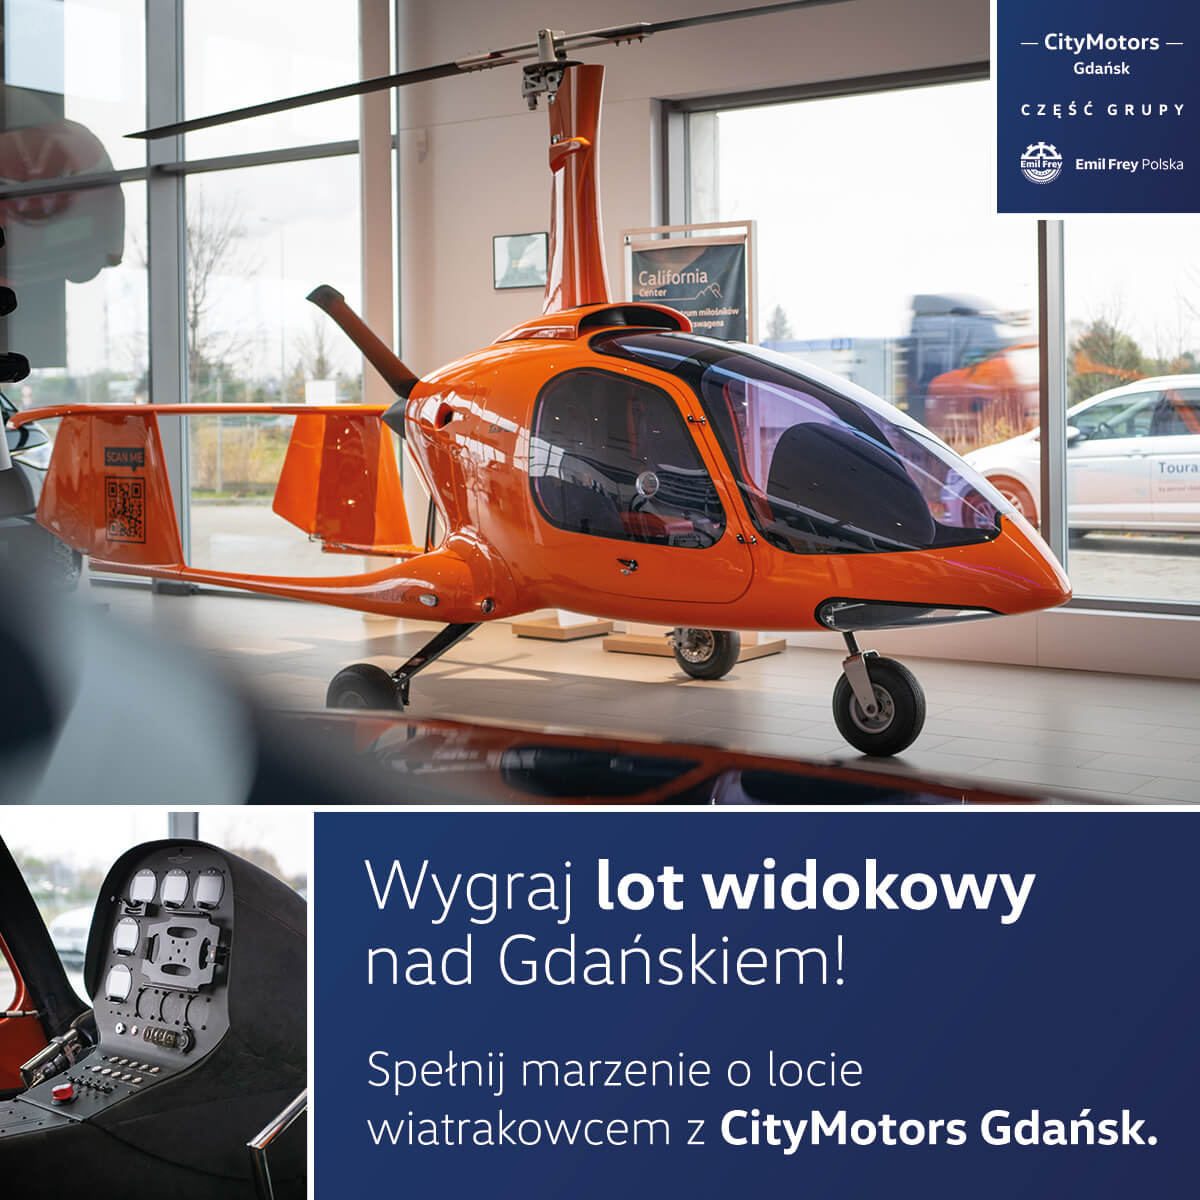 Grudniowy konkurs – lot widokowy z CityMotors!